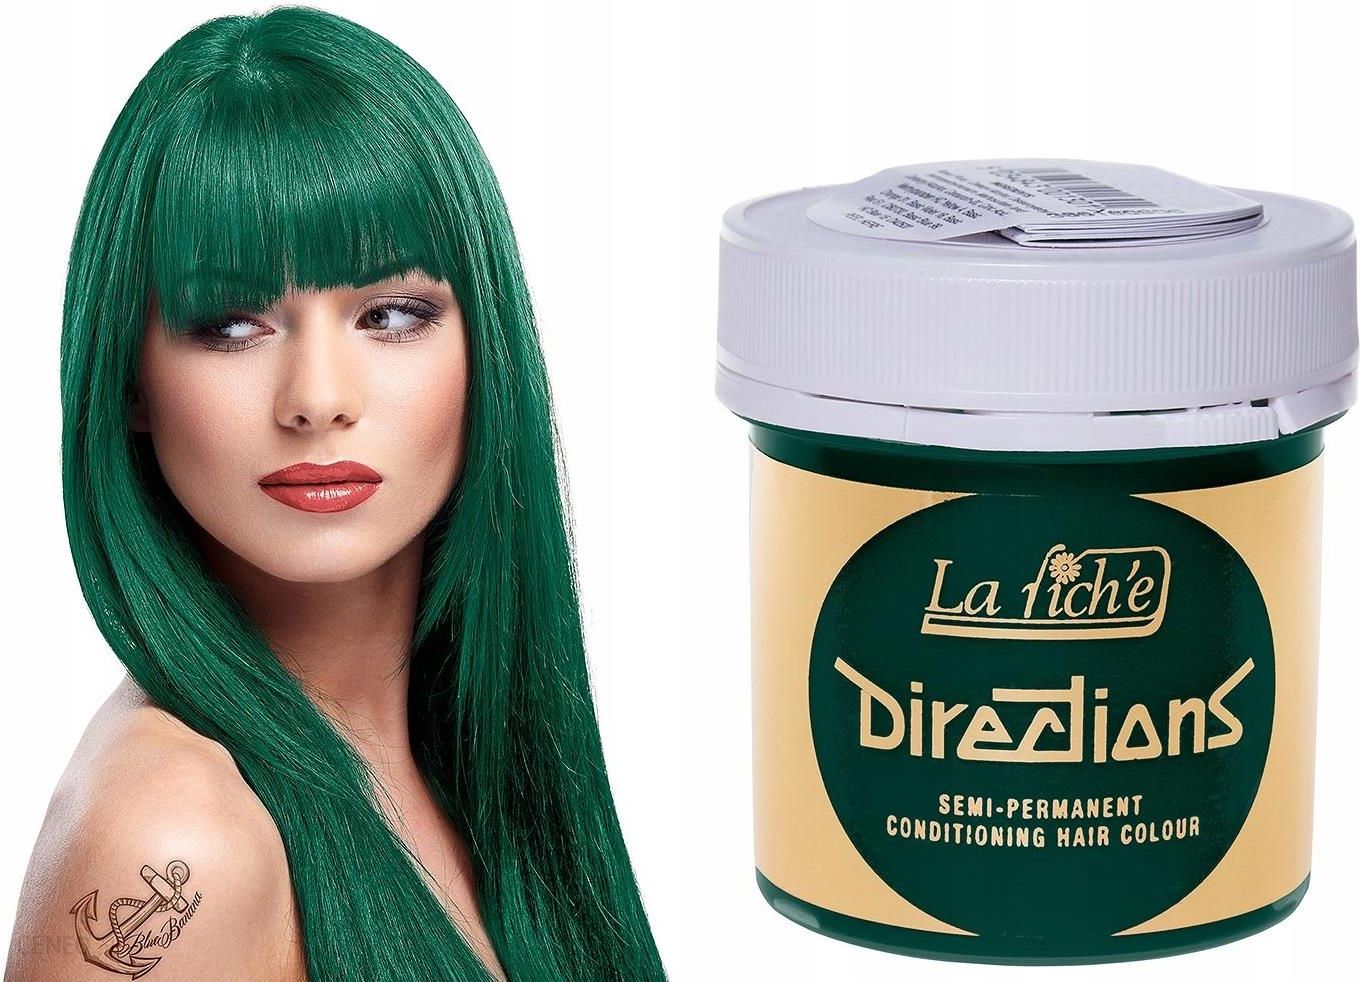 La Riche Directions Alpine Green Hair Dye